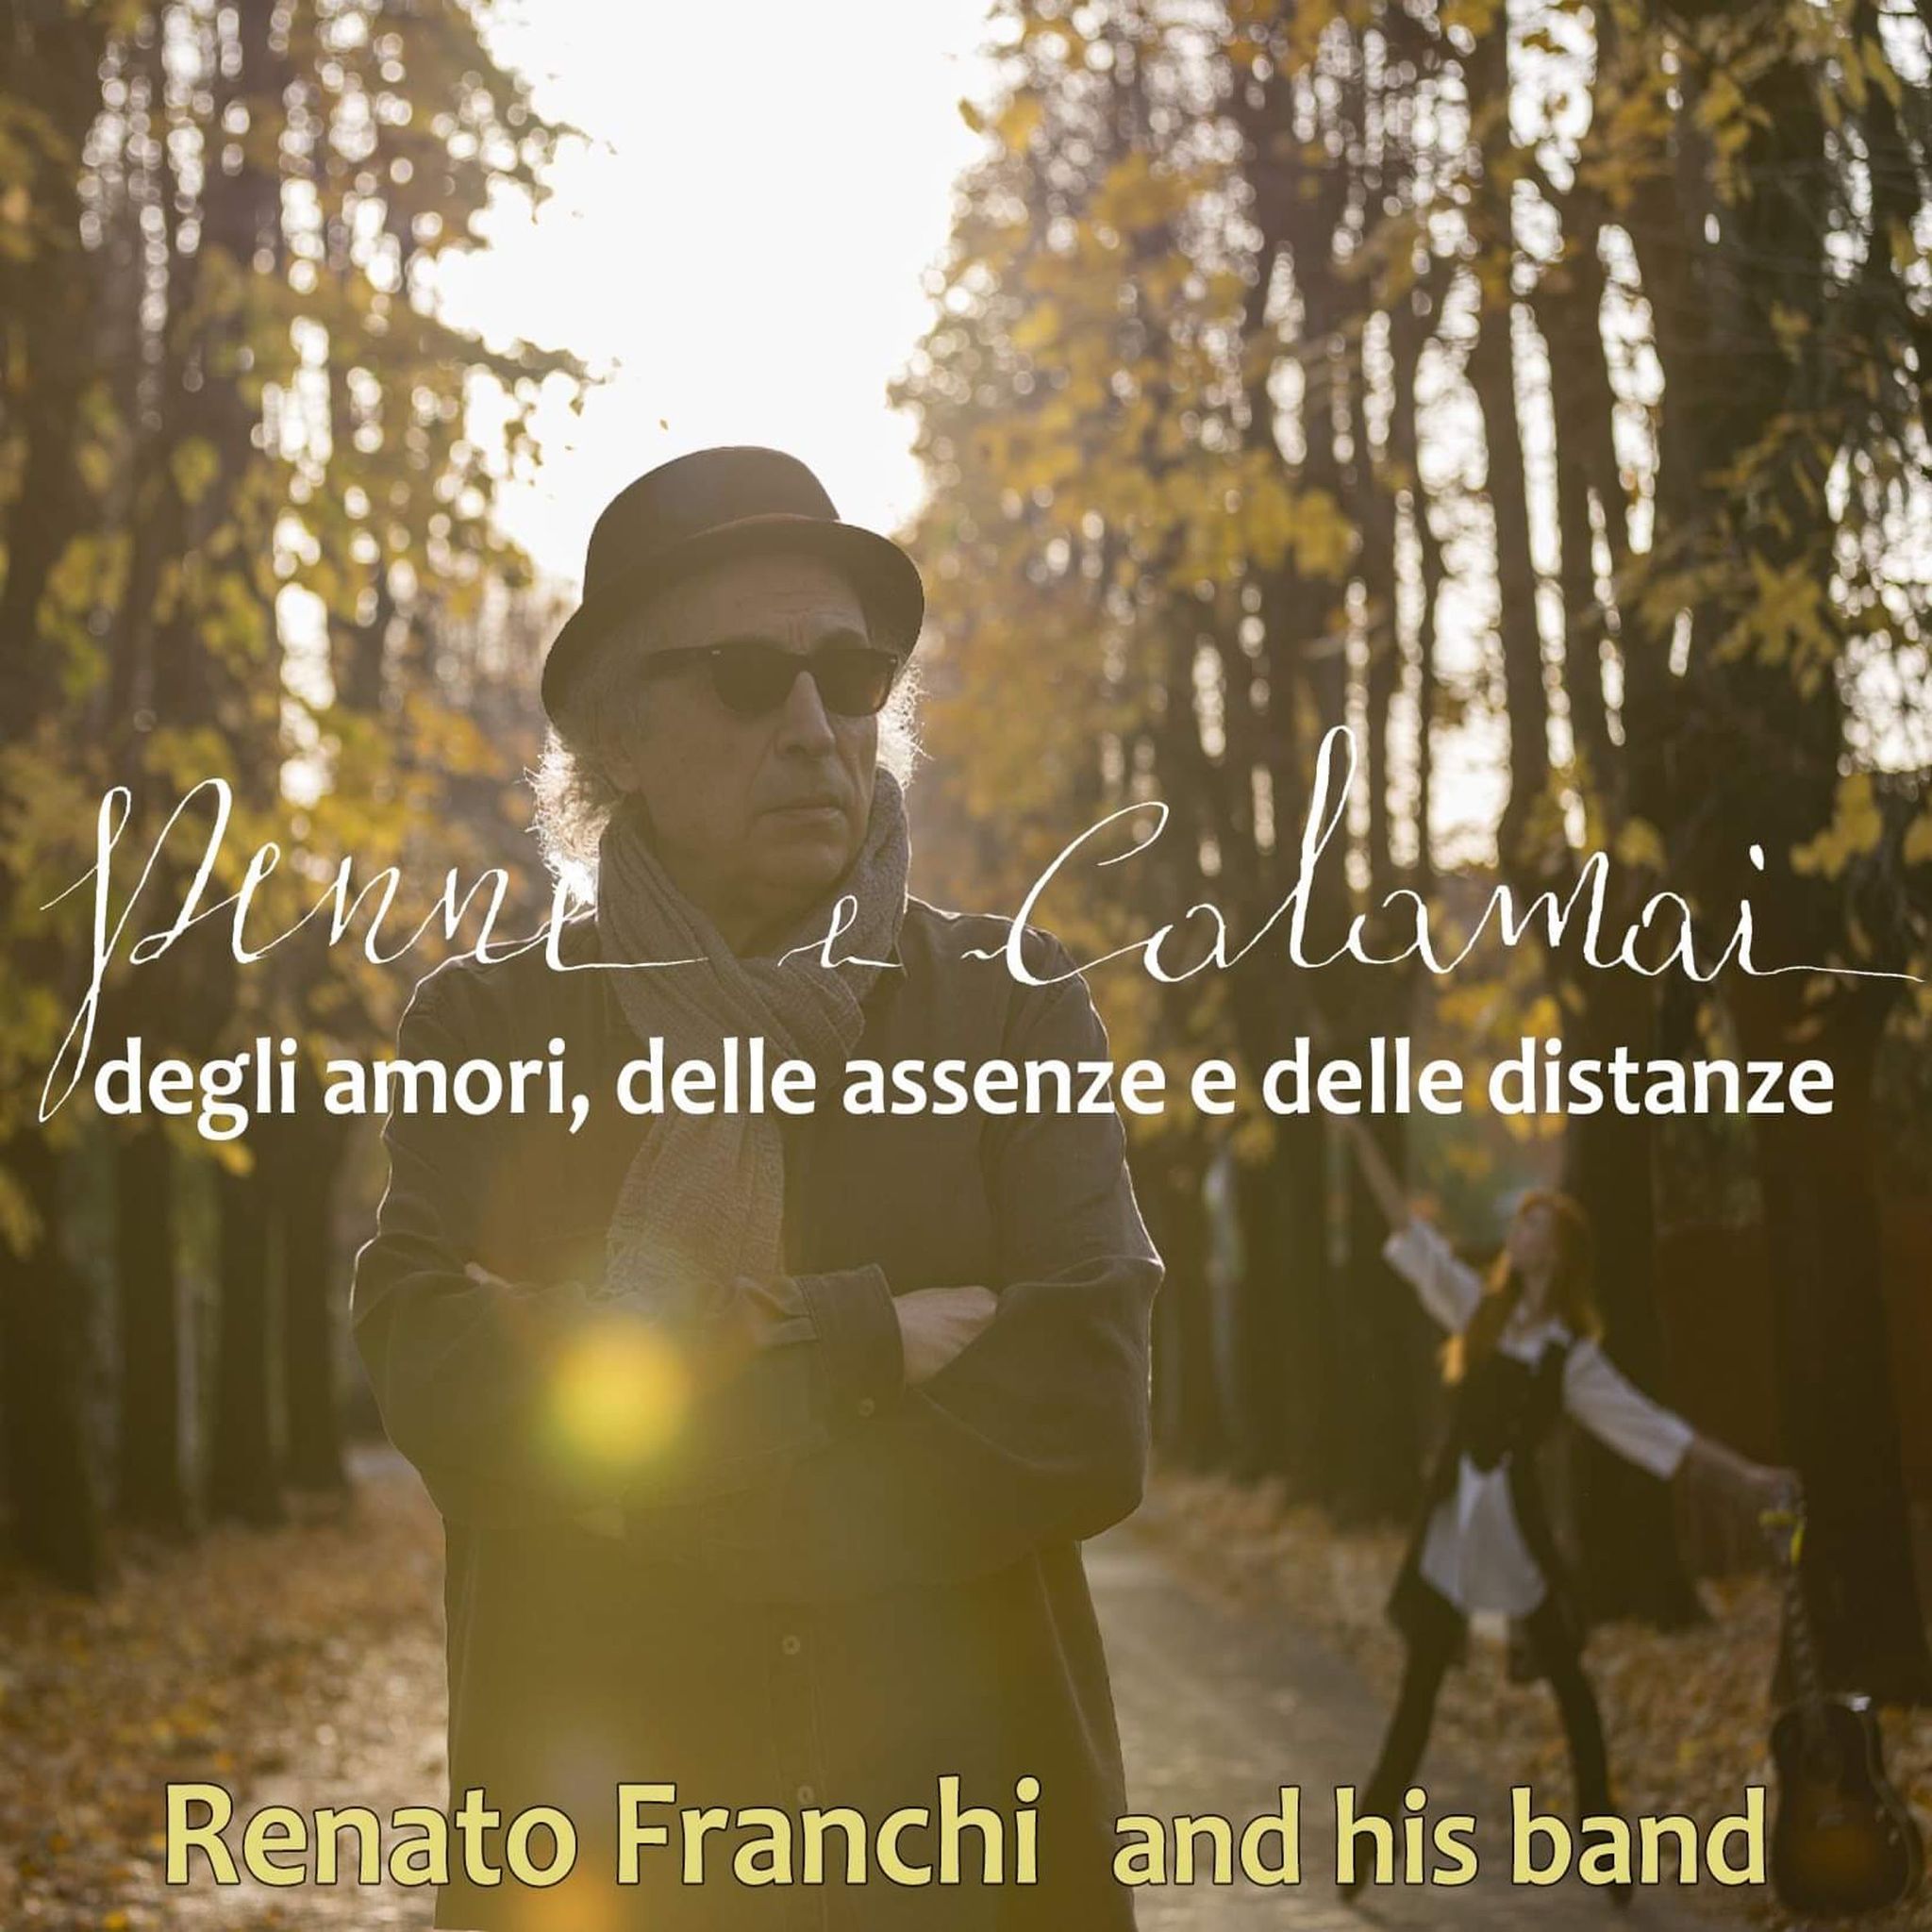 Renato Franchi & his band con l’album “Penne e Calamai”